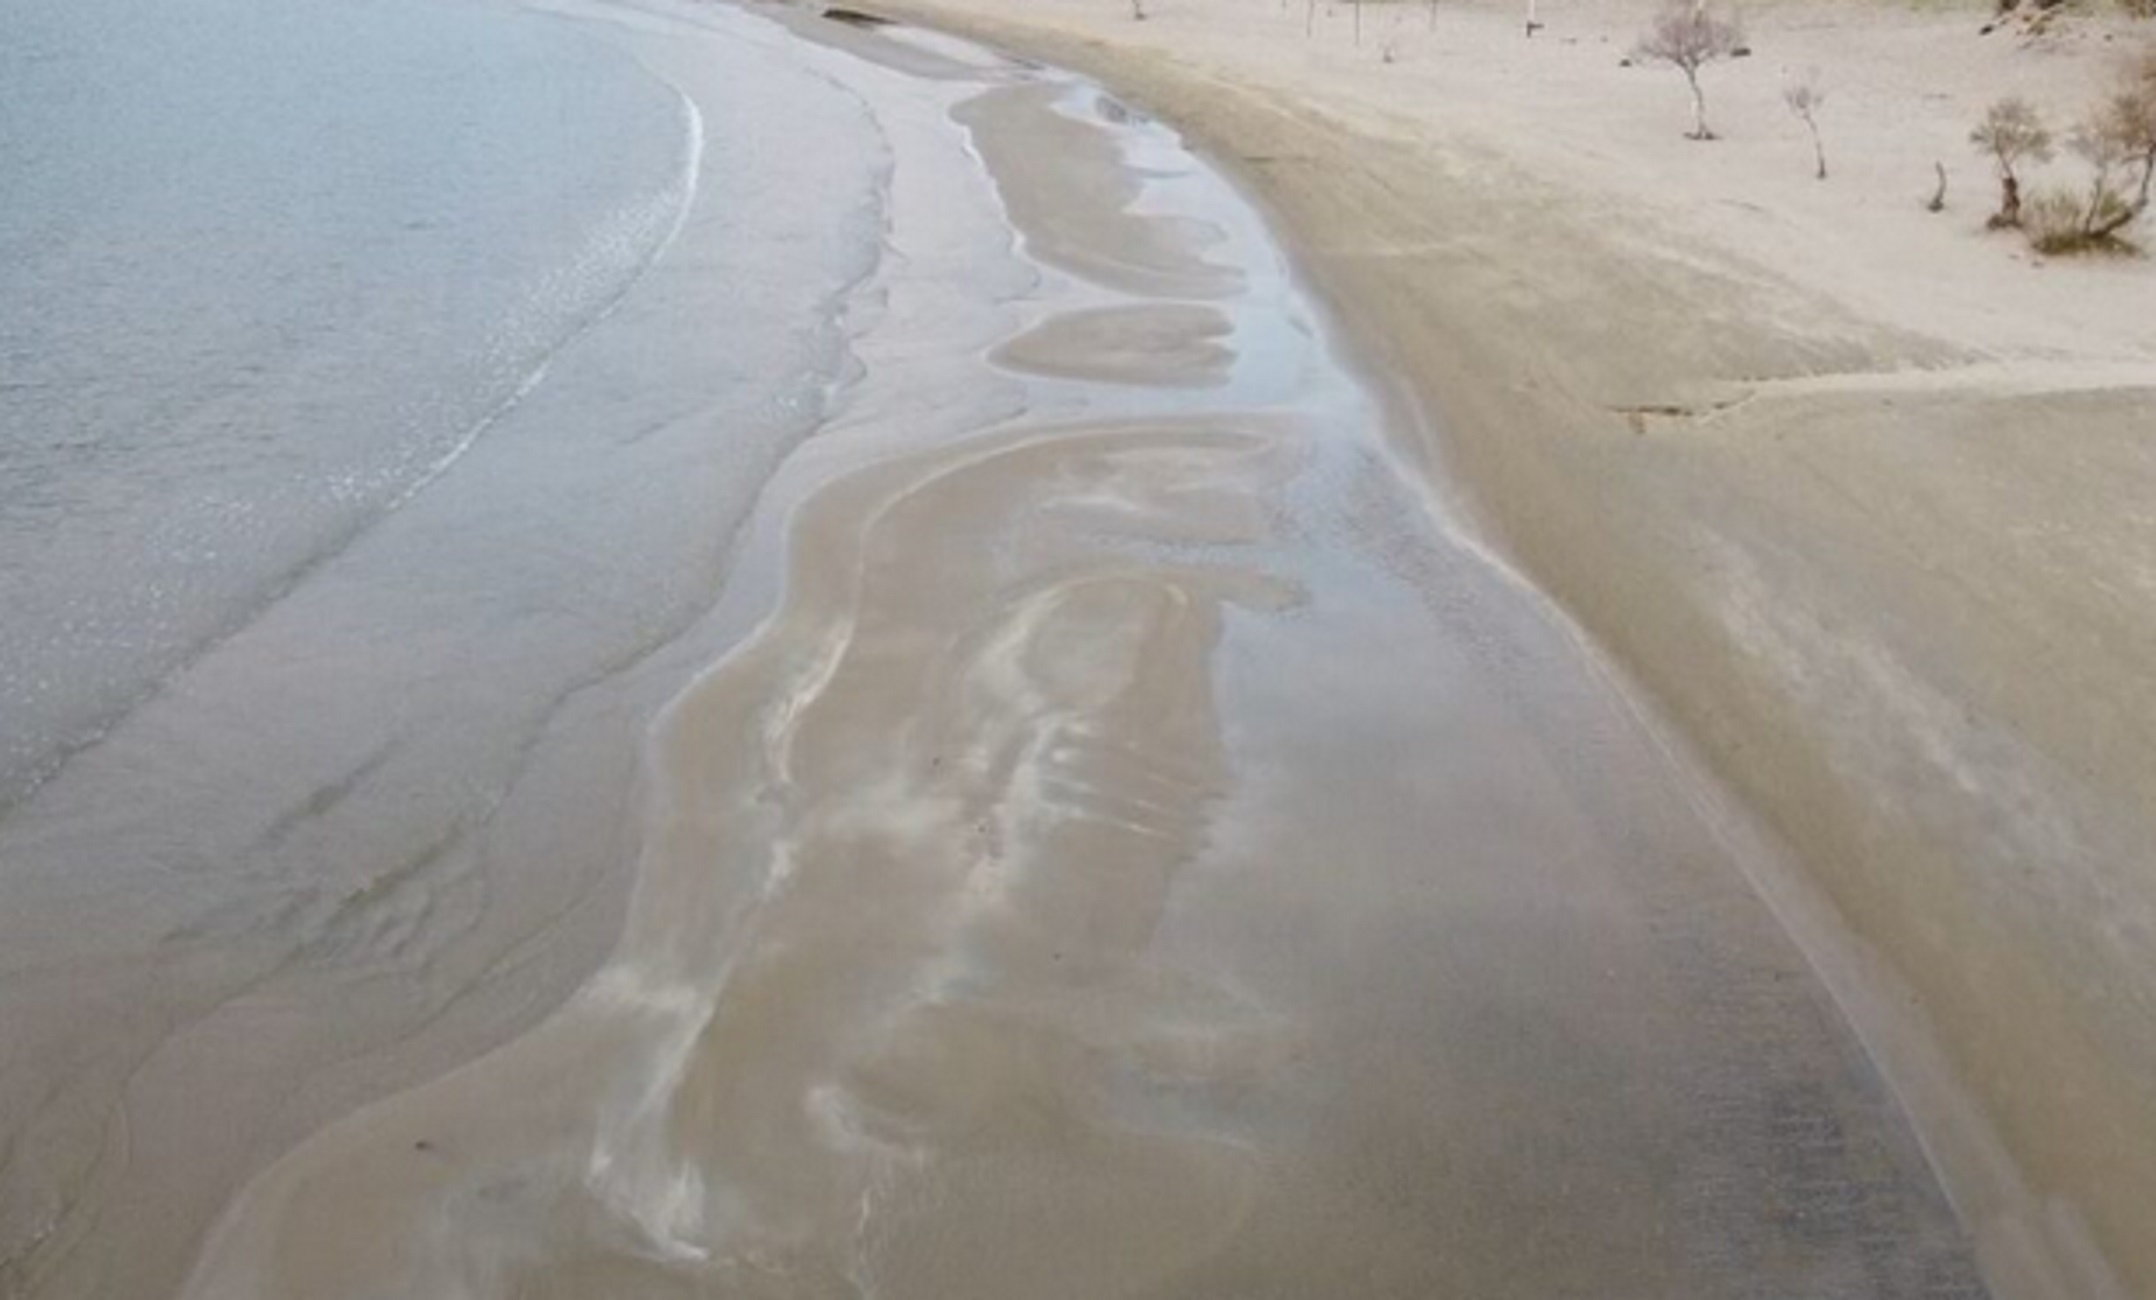 Σύρος: Η άμπωτη αποκάλυψε ολόκληρη την παραλία – Η θάλασσα «εξαφανίστηκε» μέσα σε λίγα λεπτά